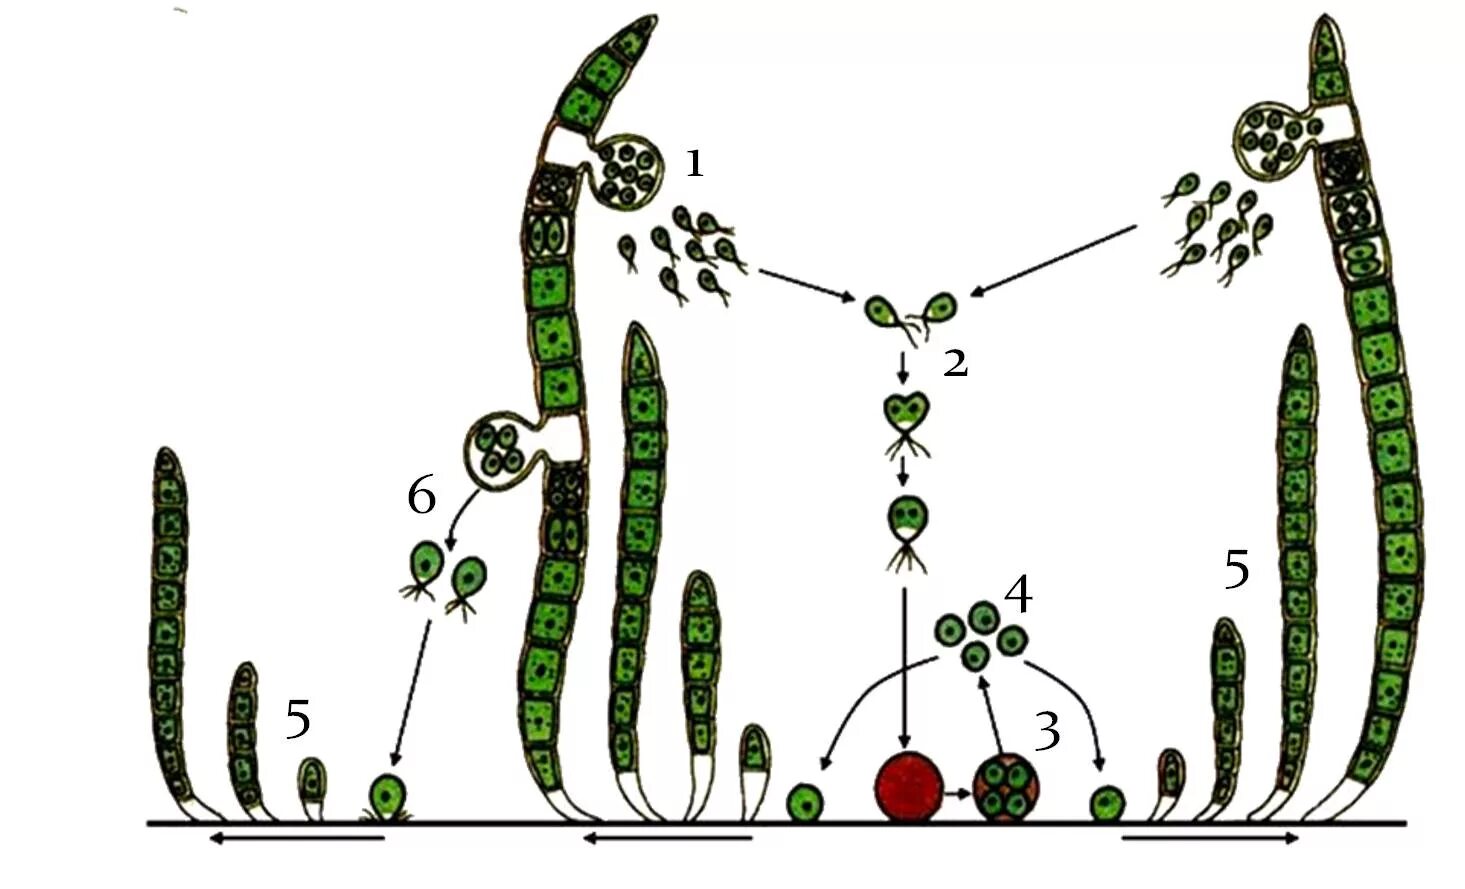 Улотрикс цикл размножения. Размножение водорослей схема улотрикс. Цикл развития улотрикса схема. Жизненный цикл улотрикса схема.